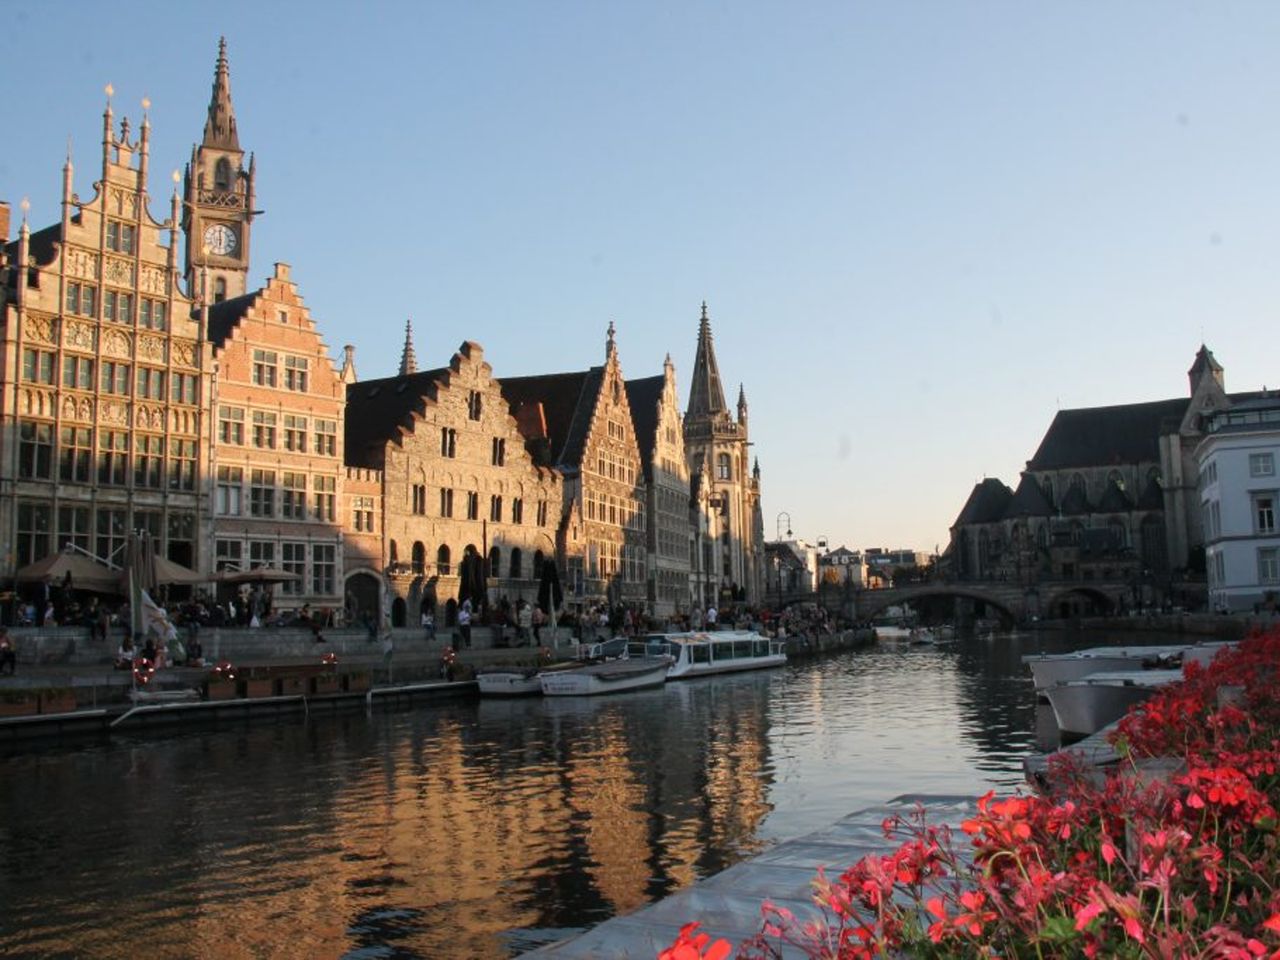 Узнать и полюбить бельгийский Гент | Цена 800€, отзывы, описание экскурсии